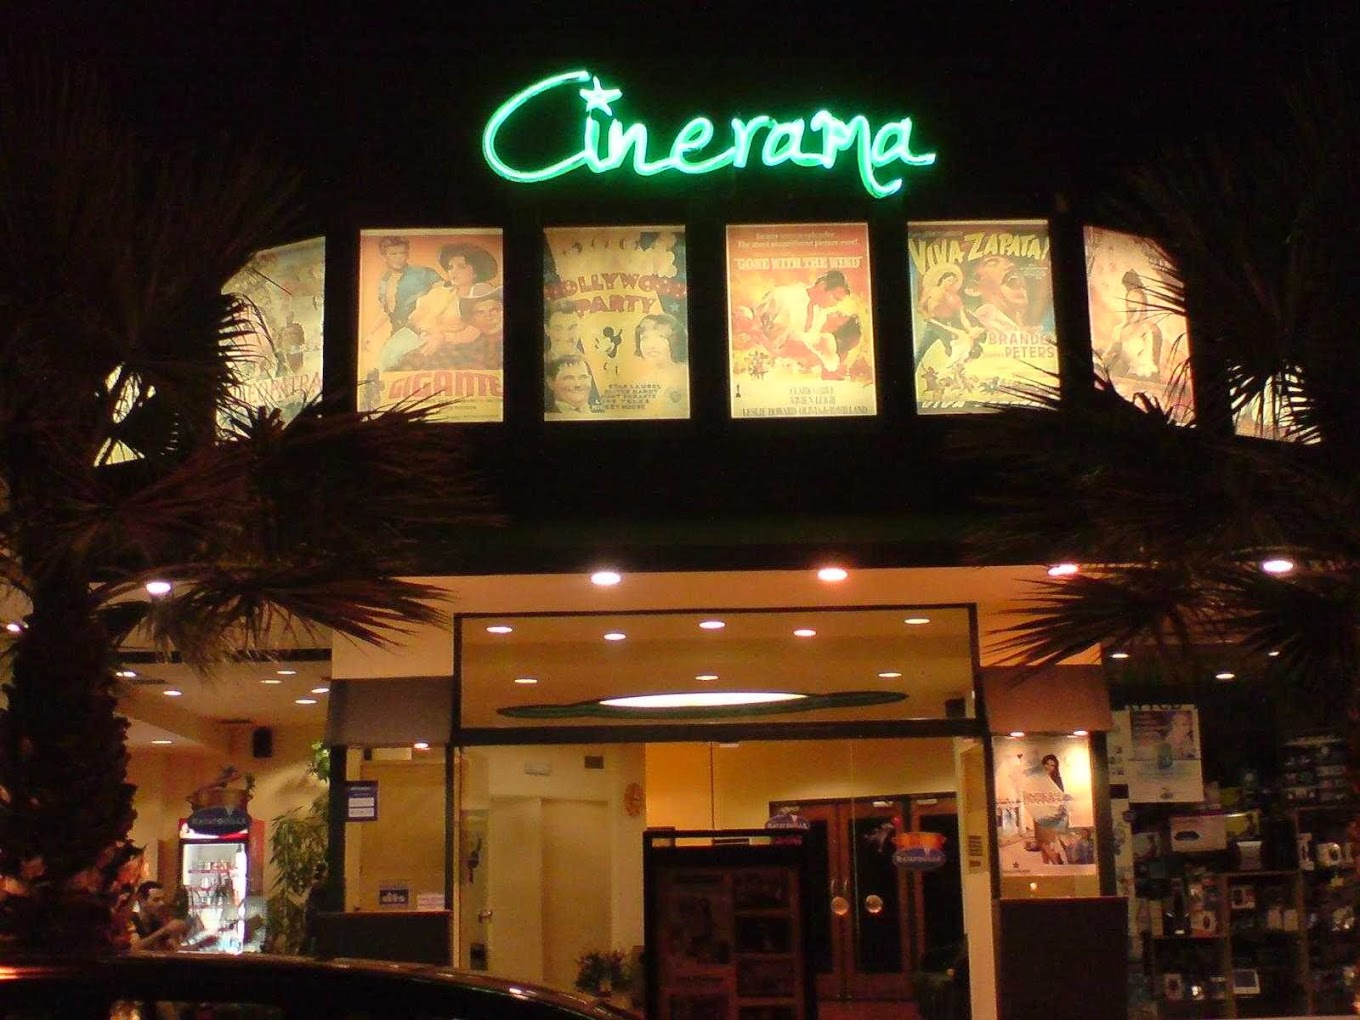 Προβολή στο Cinerama Digital Cinema στο Παλαίο Φάληρο από 19/5.